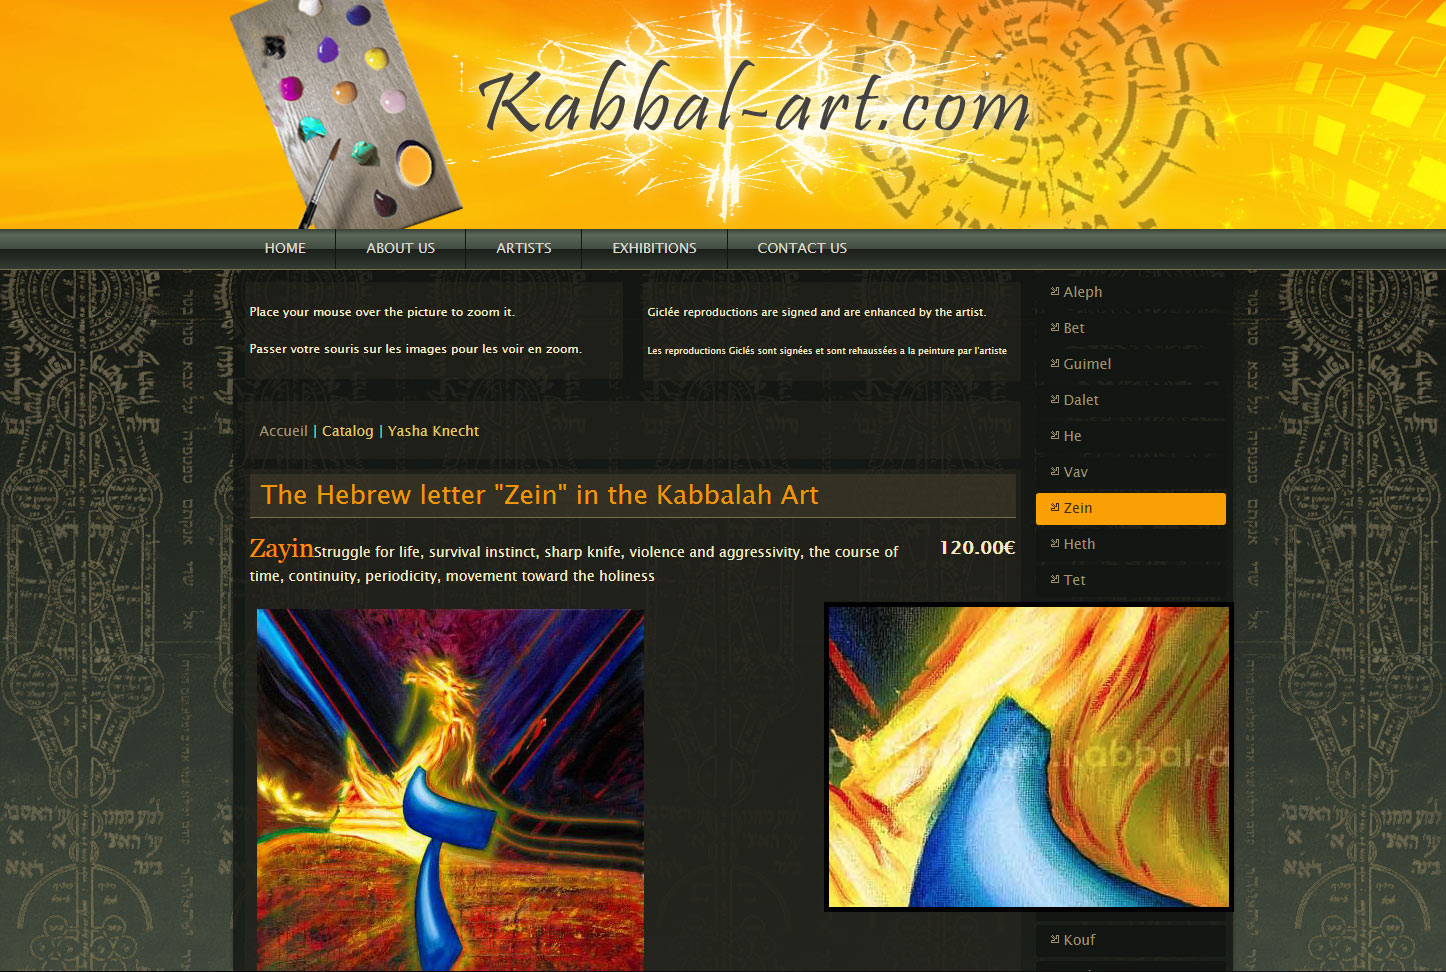 Kabbal-art